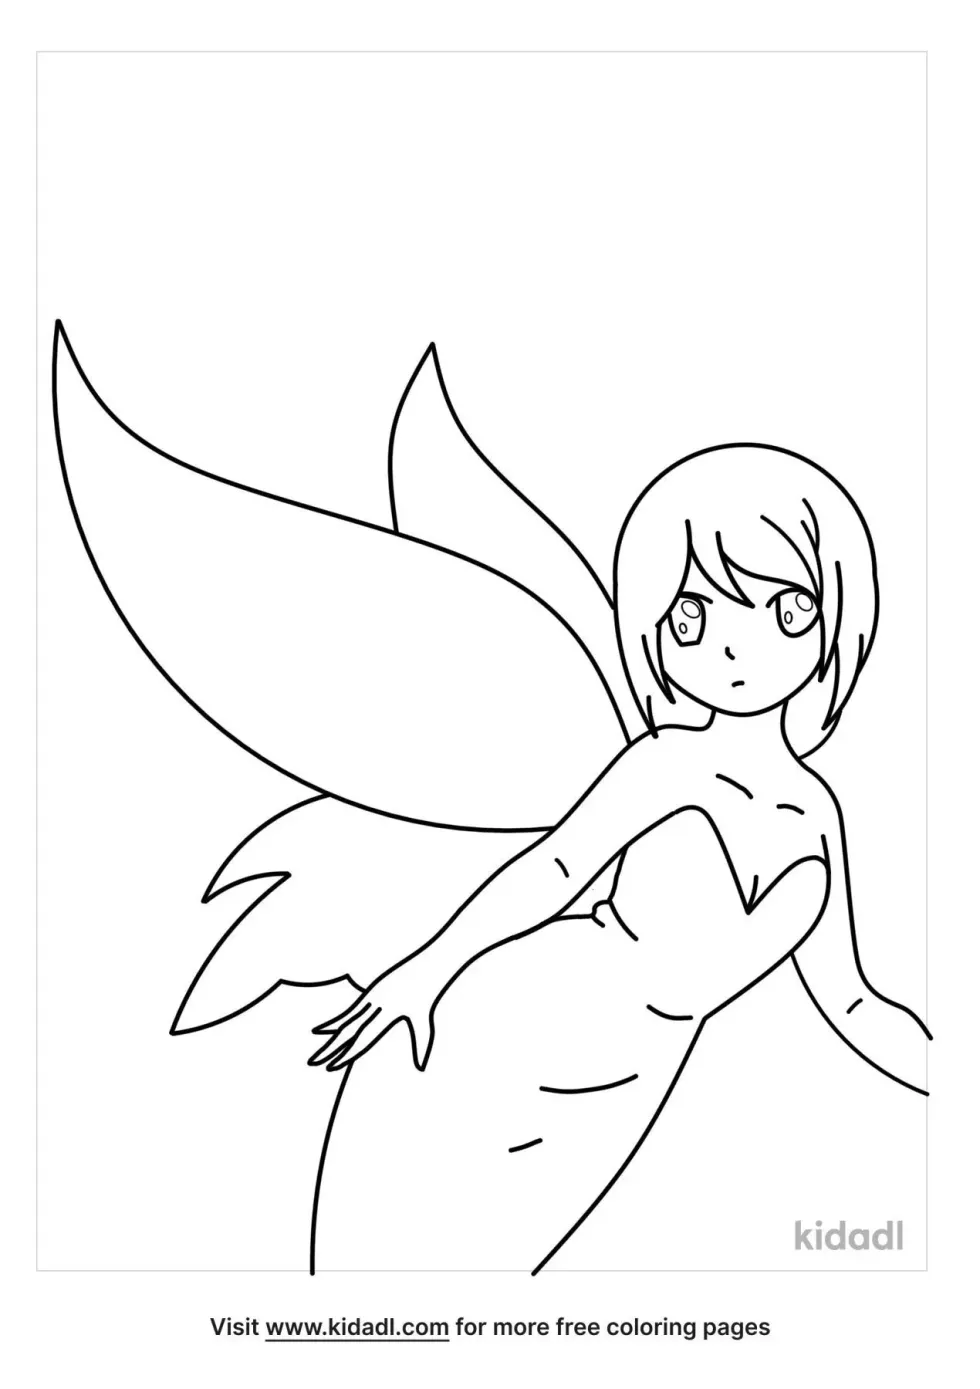 Anime Fairy Girl